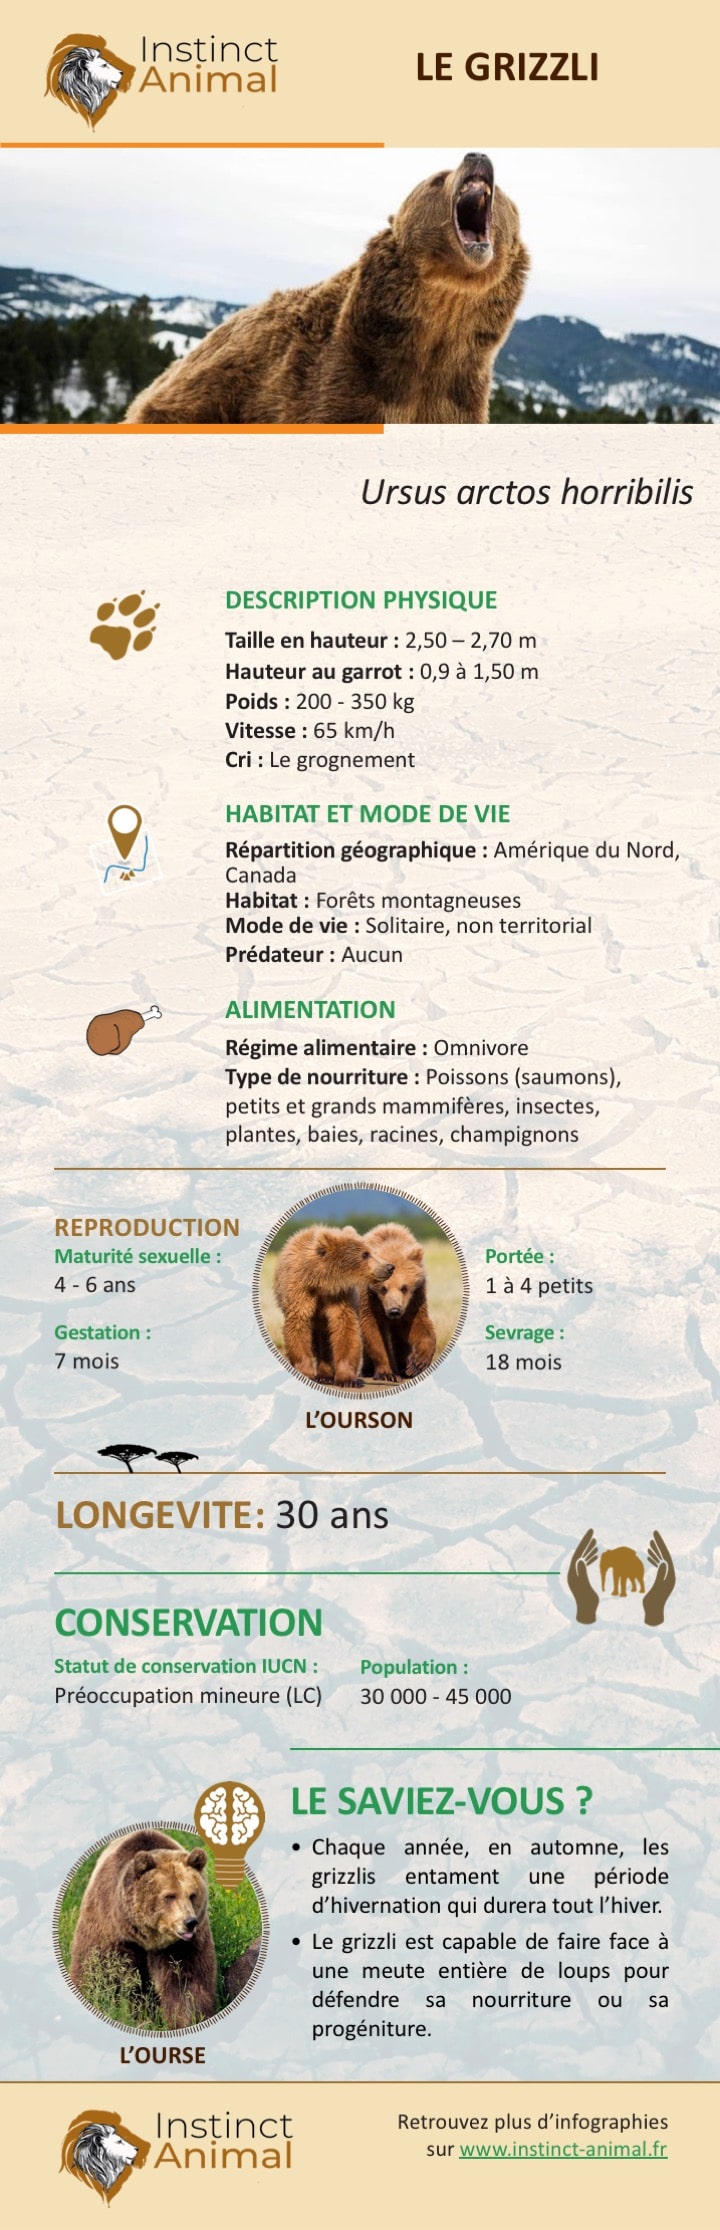 Description du grizzli (ou grizzly) - Infographie - Instinct Animal